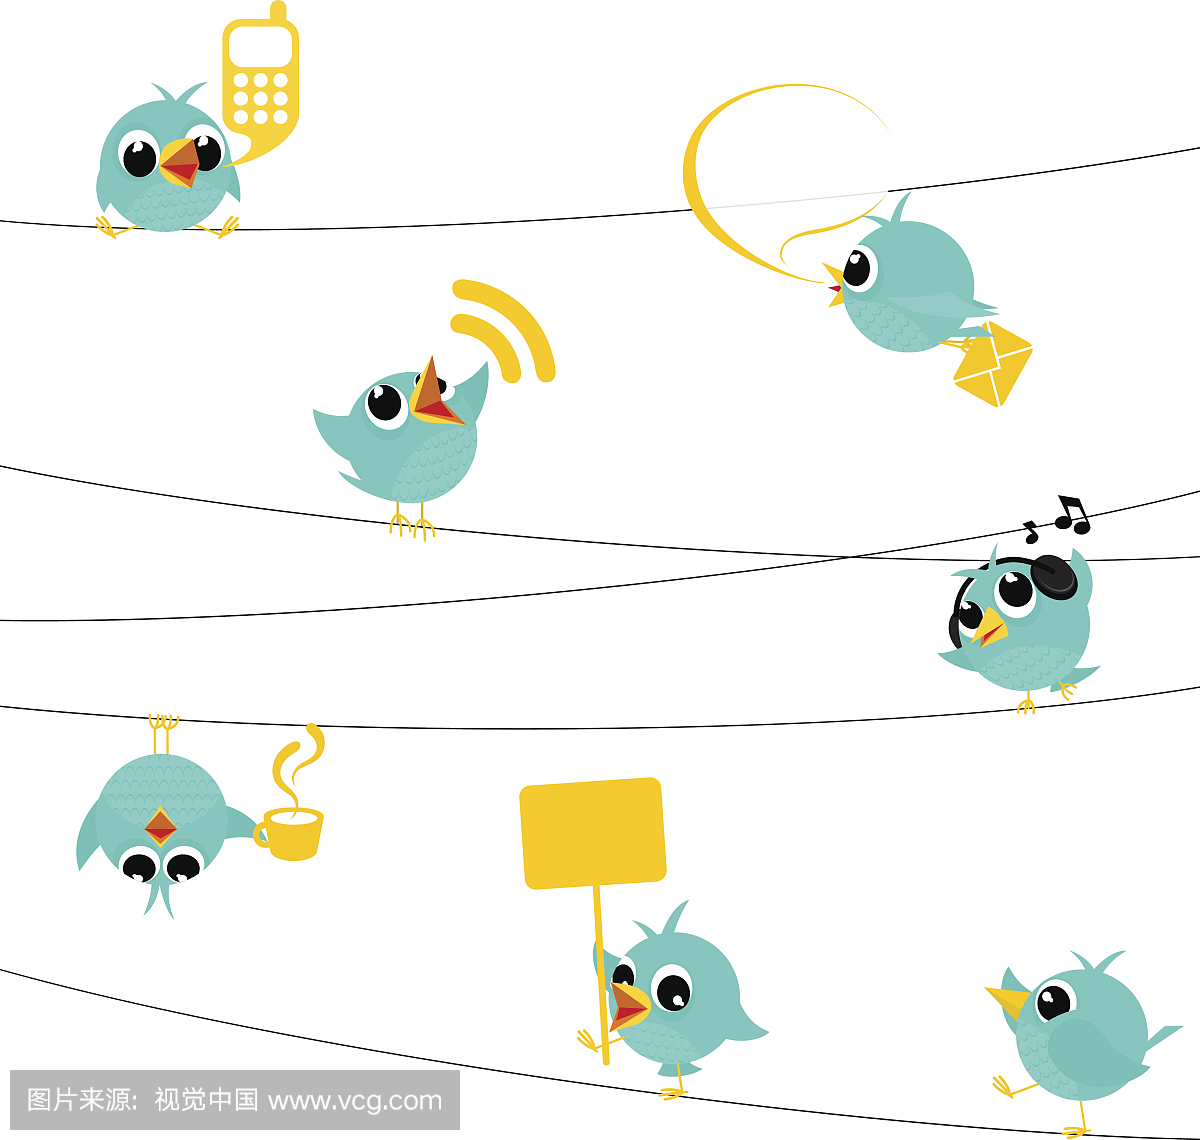 鸟,鸣叫,蓝鸟,饲料,社交媒体,文字,跟随,卡通,最小